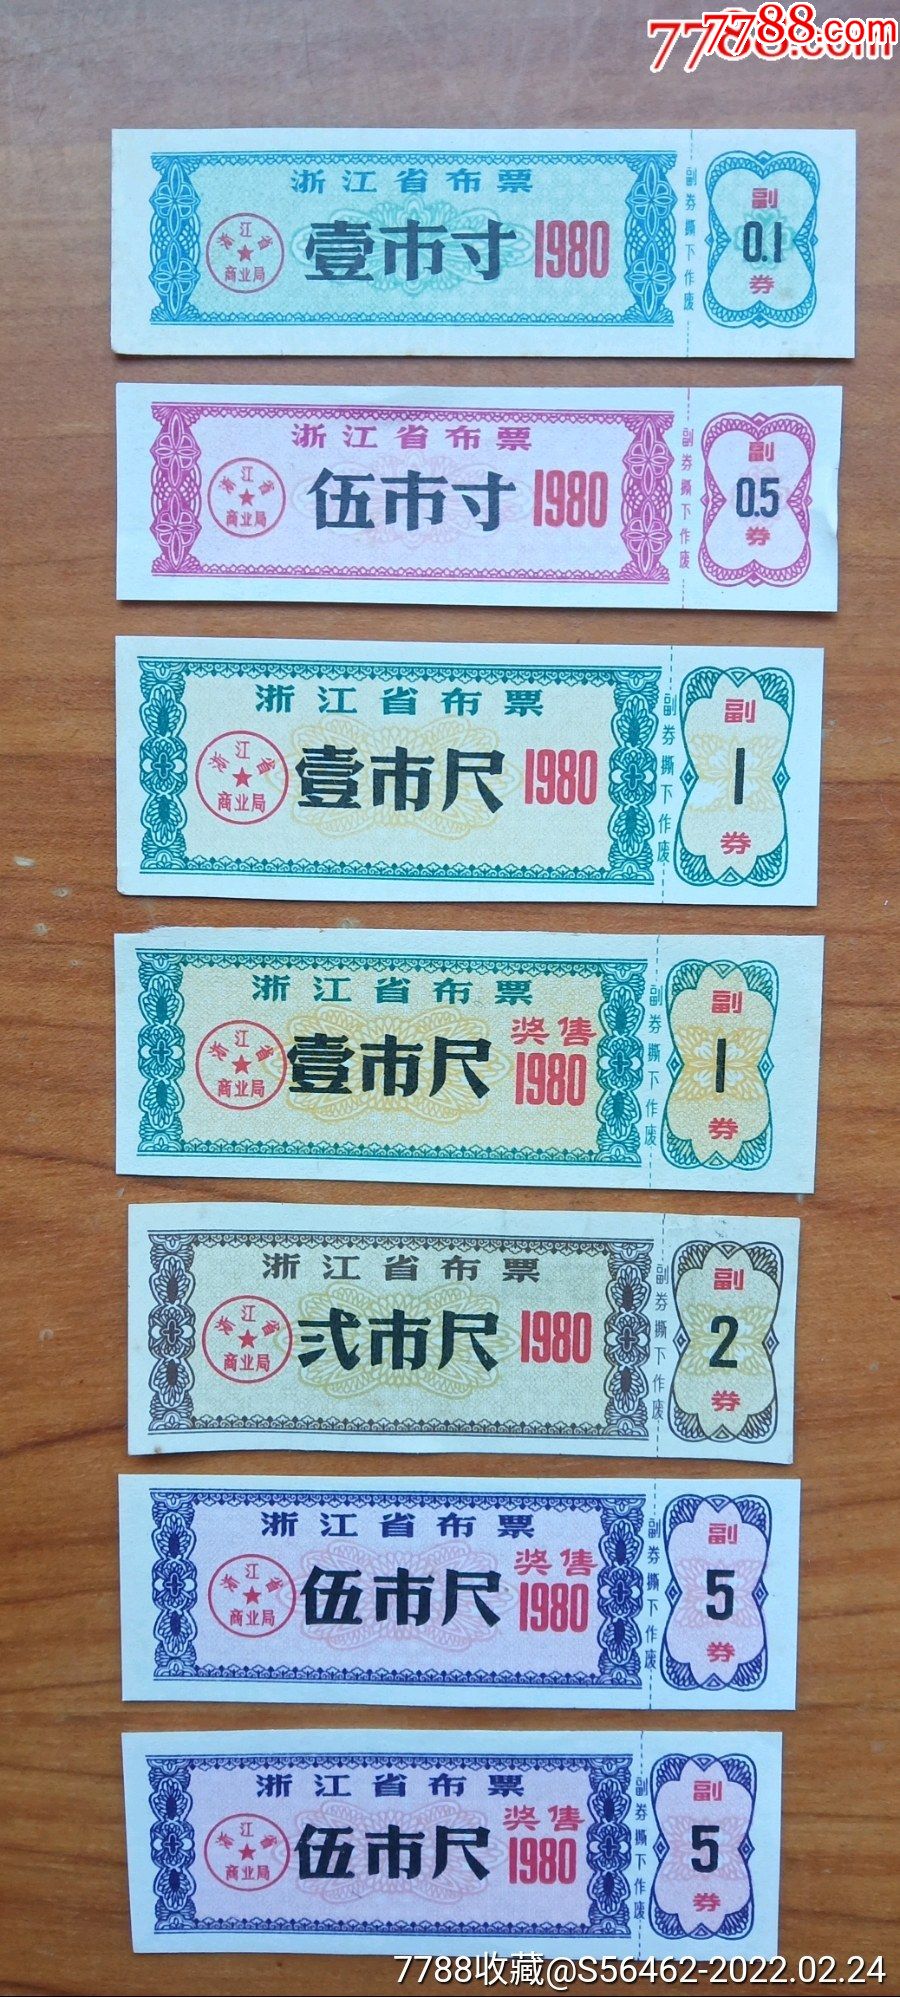 1980年浙江省布票壹组